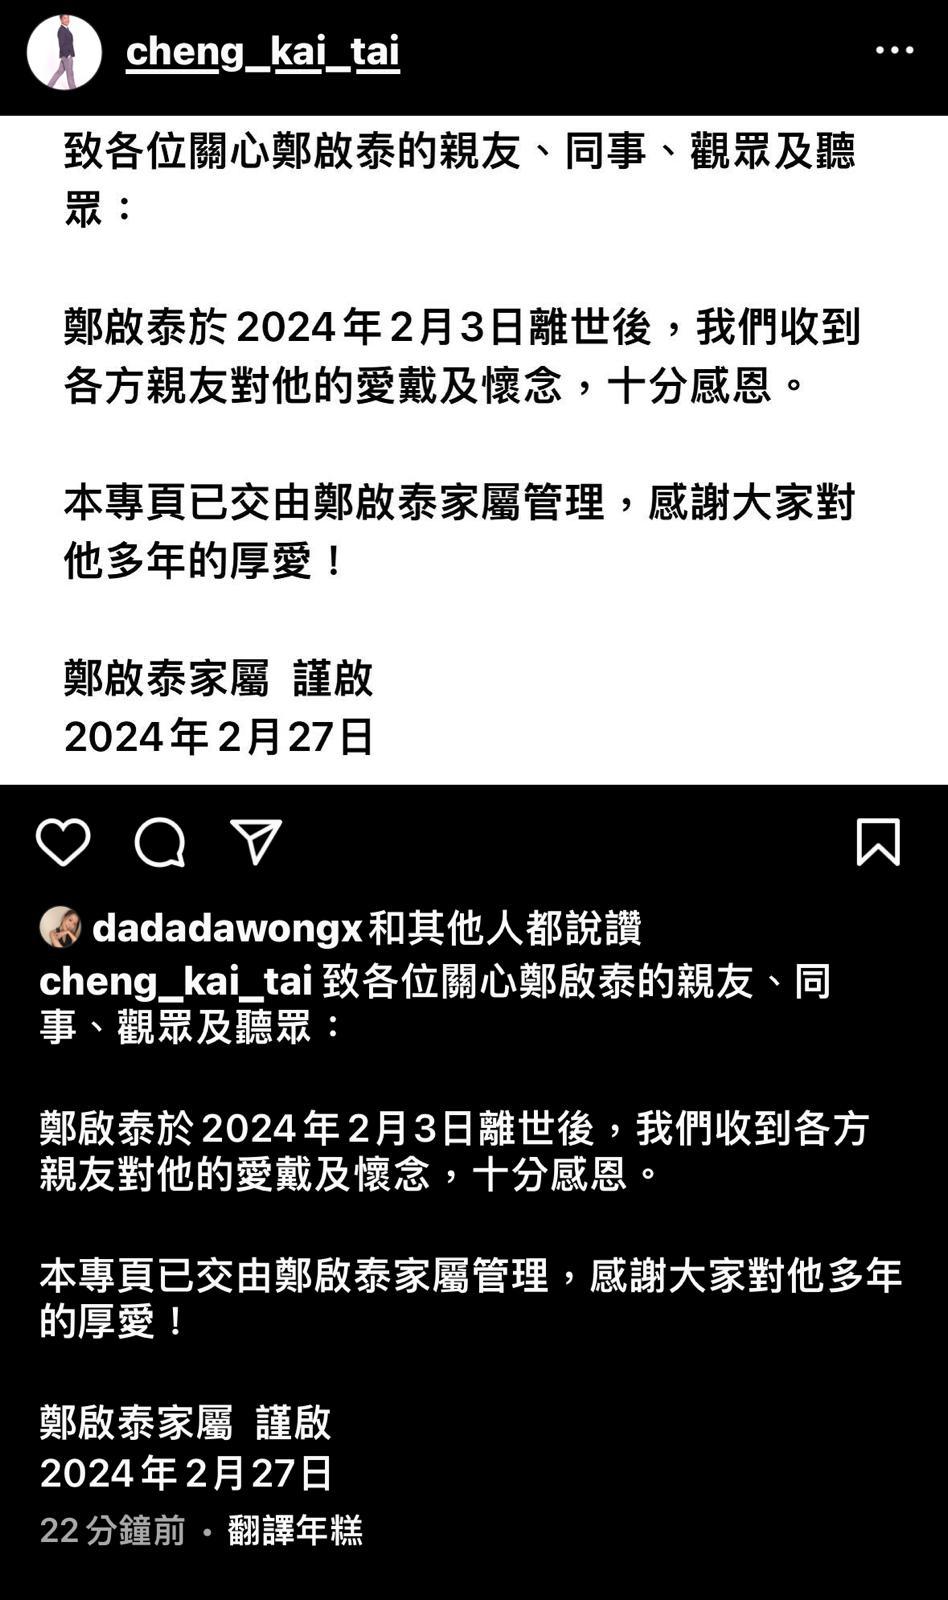 日前郑启泰的家属表示已经接手管理郑启泰的IG。